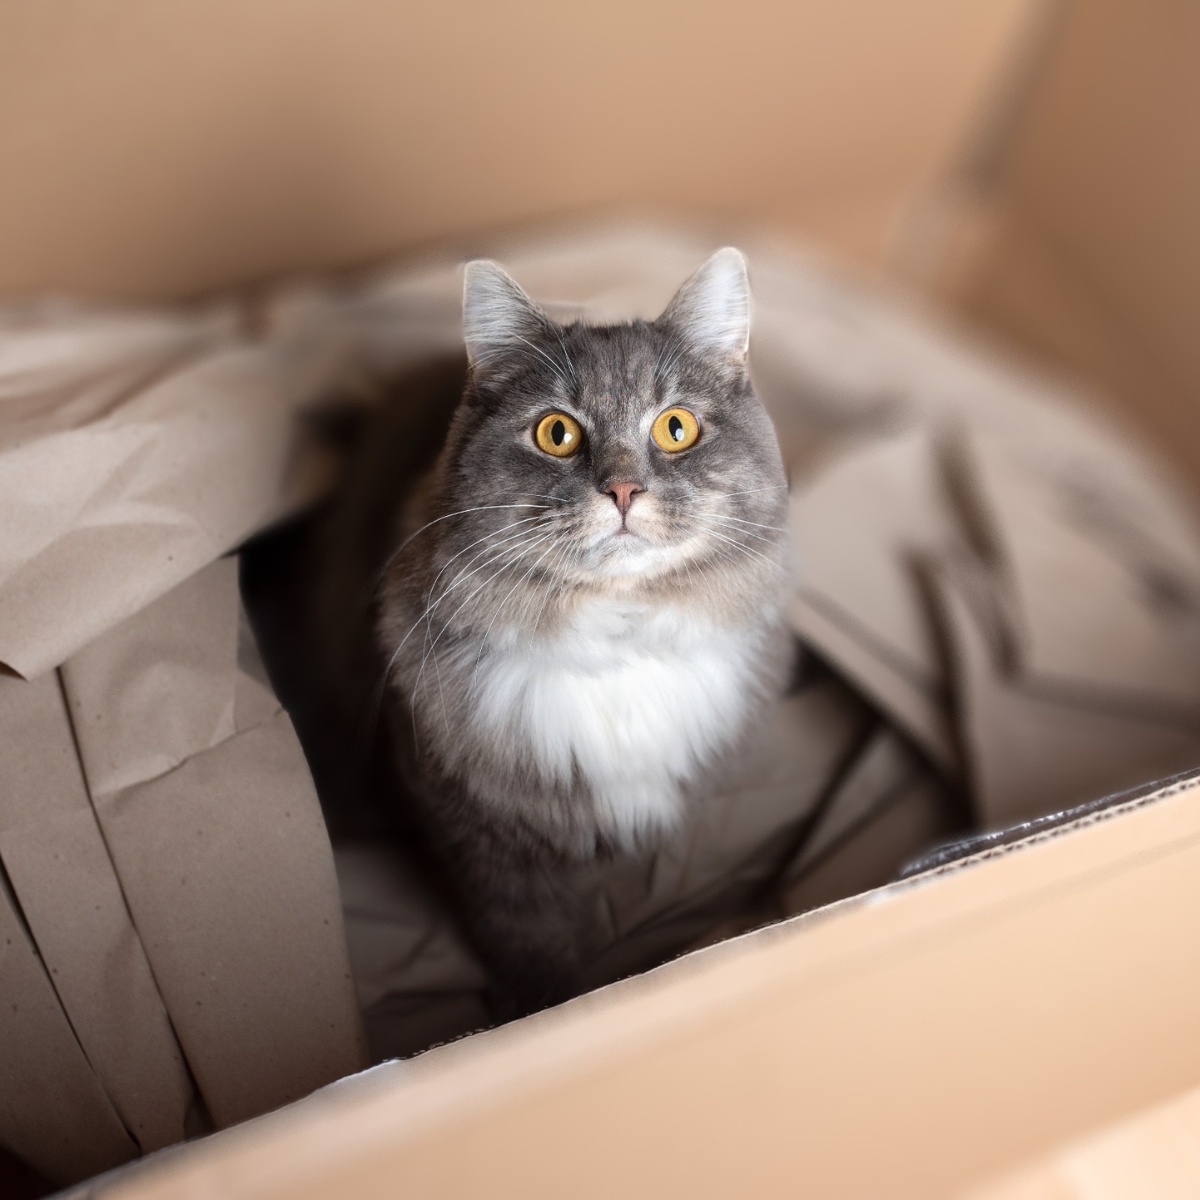 Koop je een mooie mand, zit de kat liever in de kartonnen doos! Waarom?